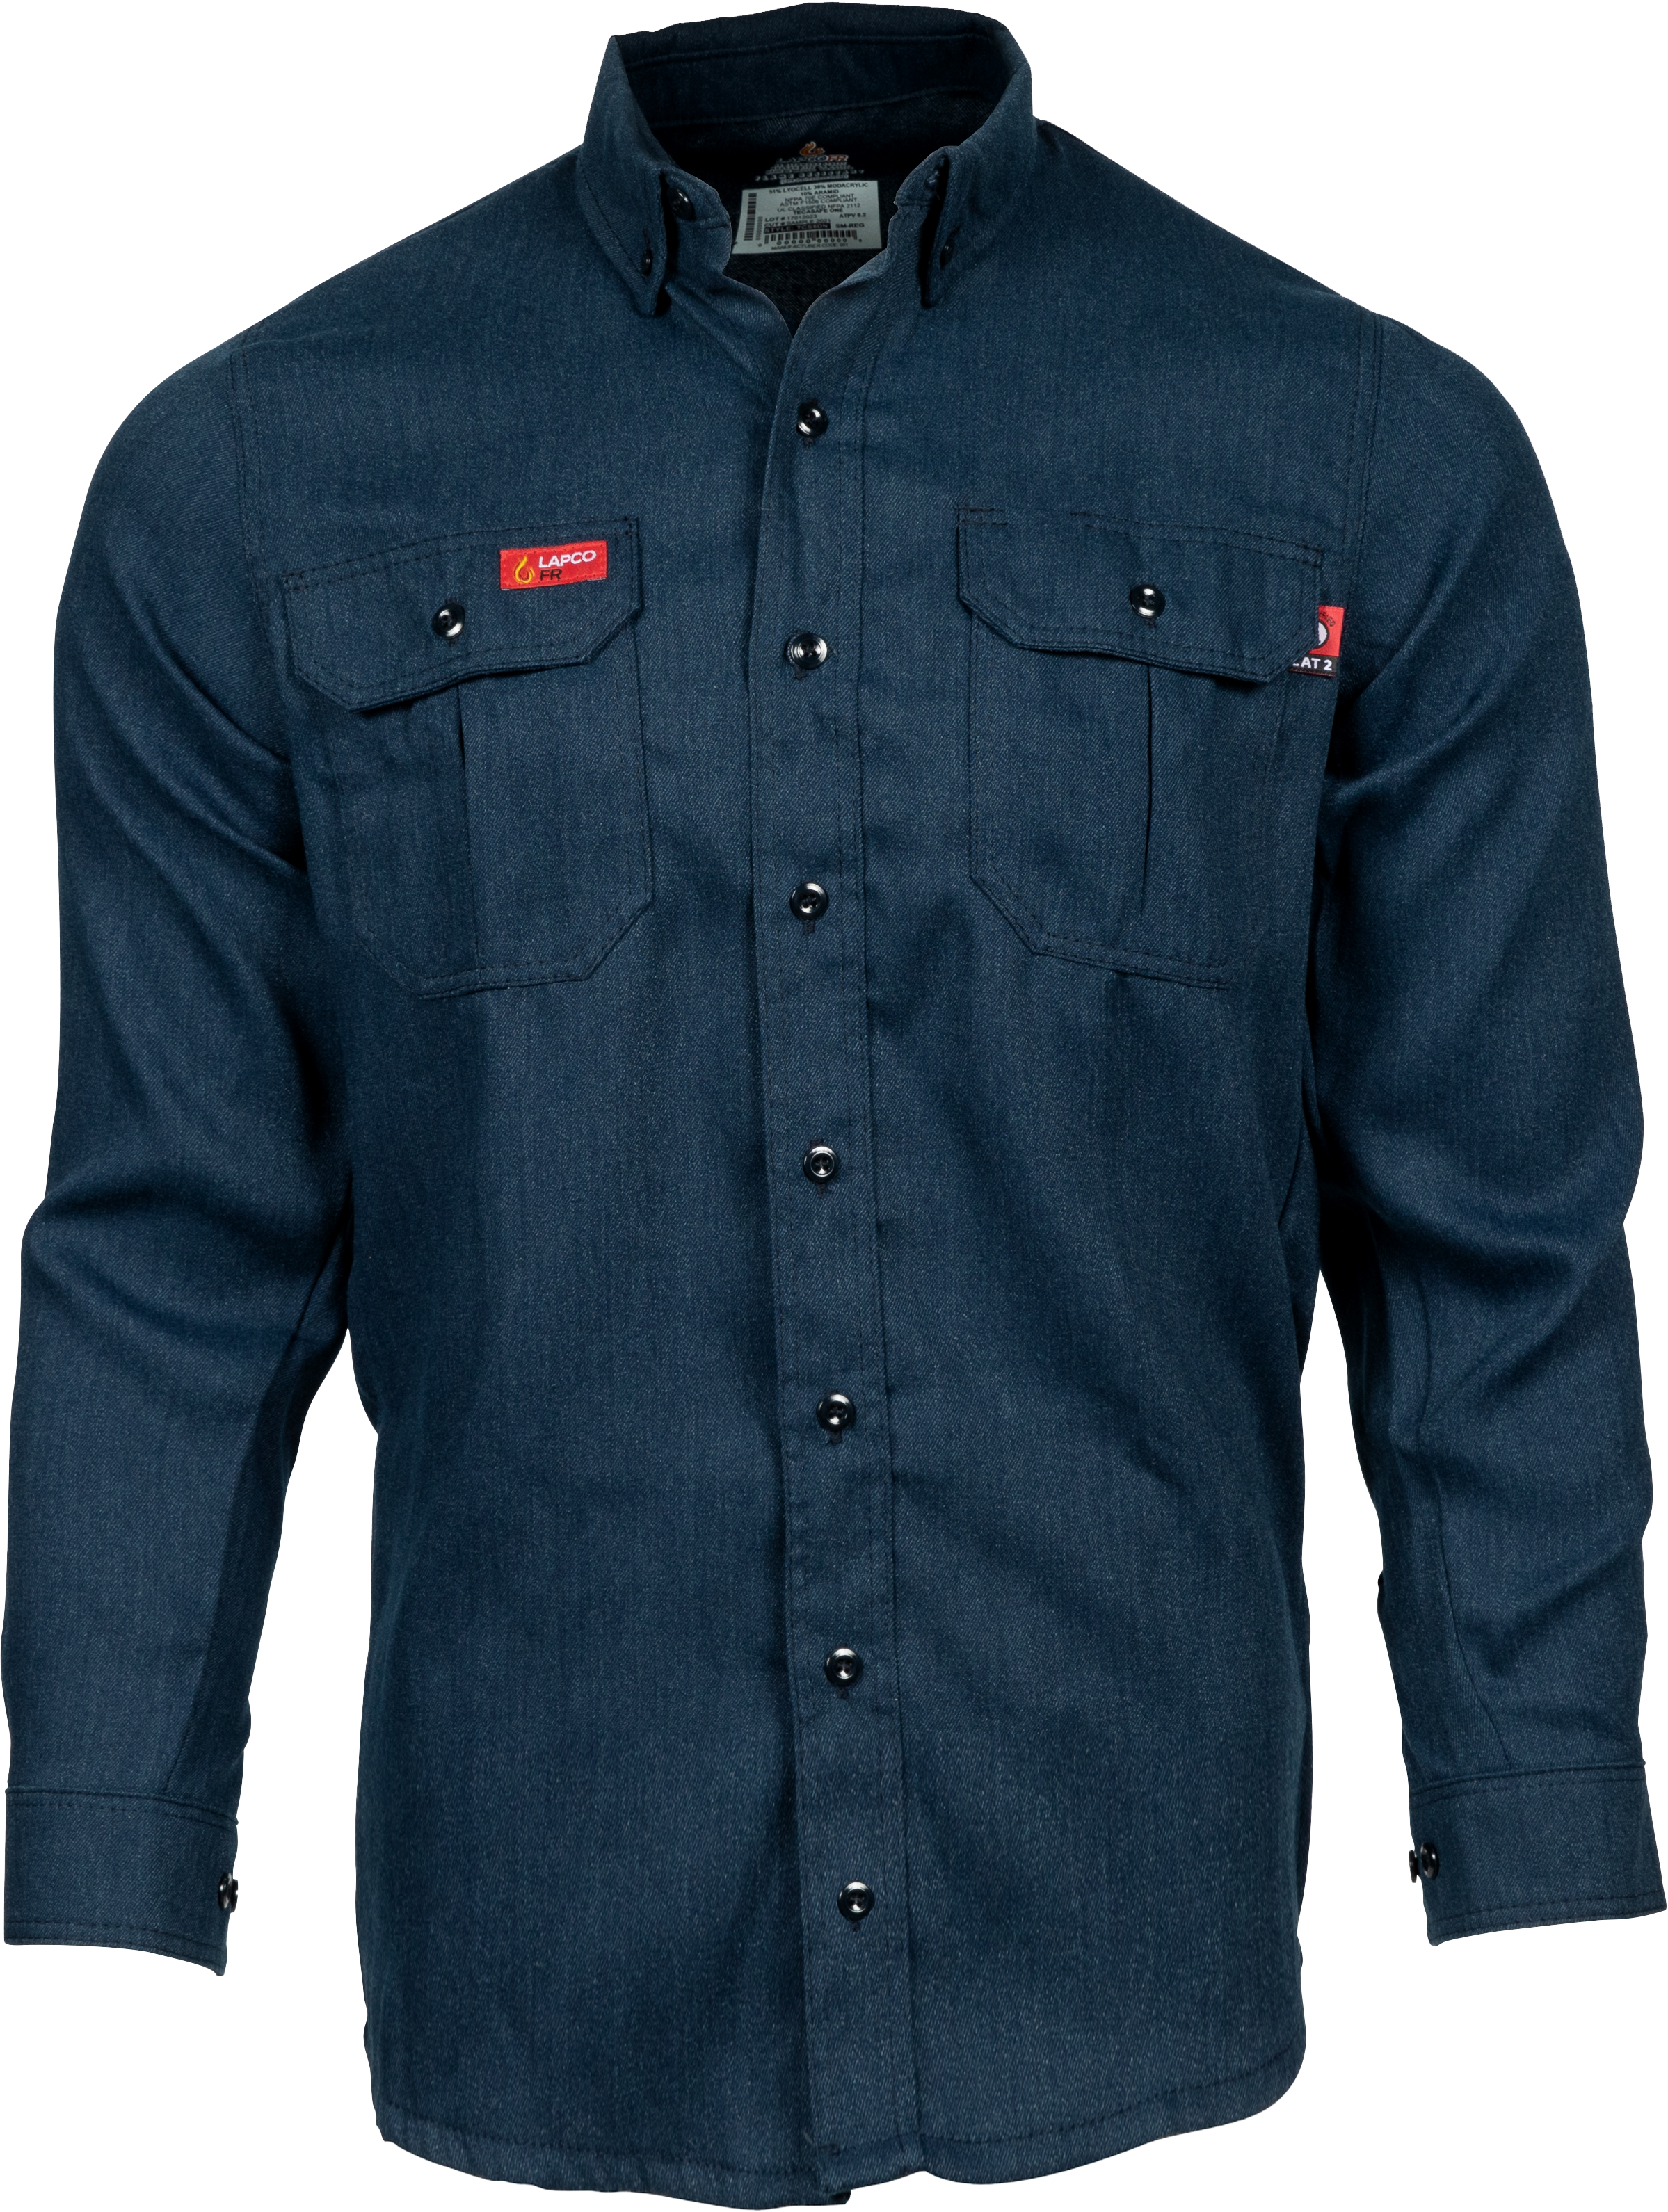 LEMAIRE Denim Shirt Jacker - Farfetch